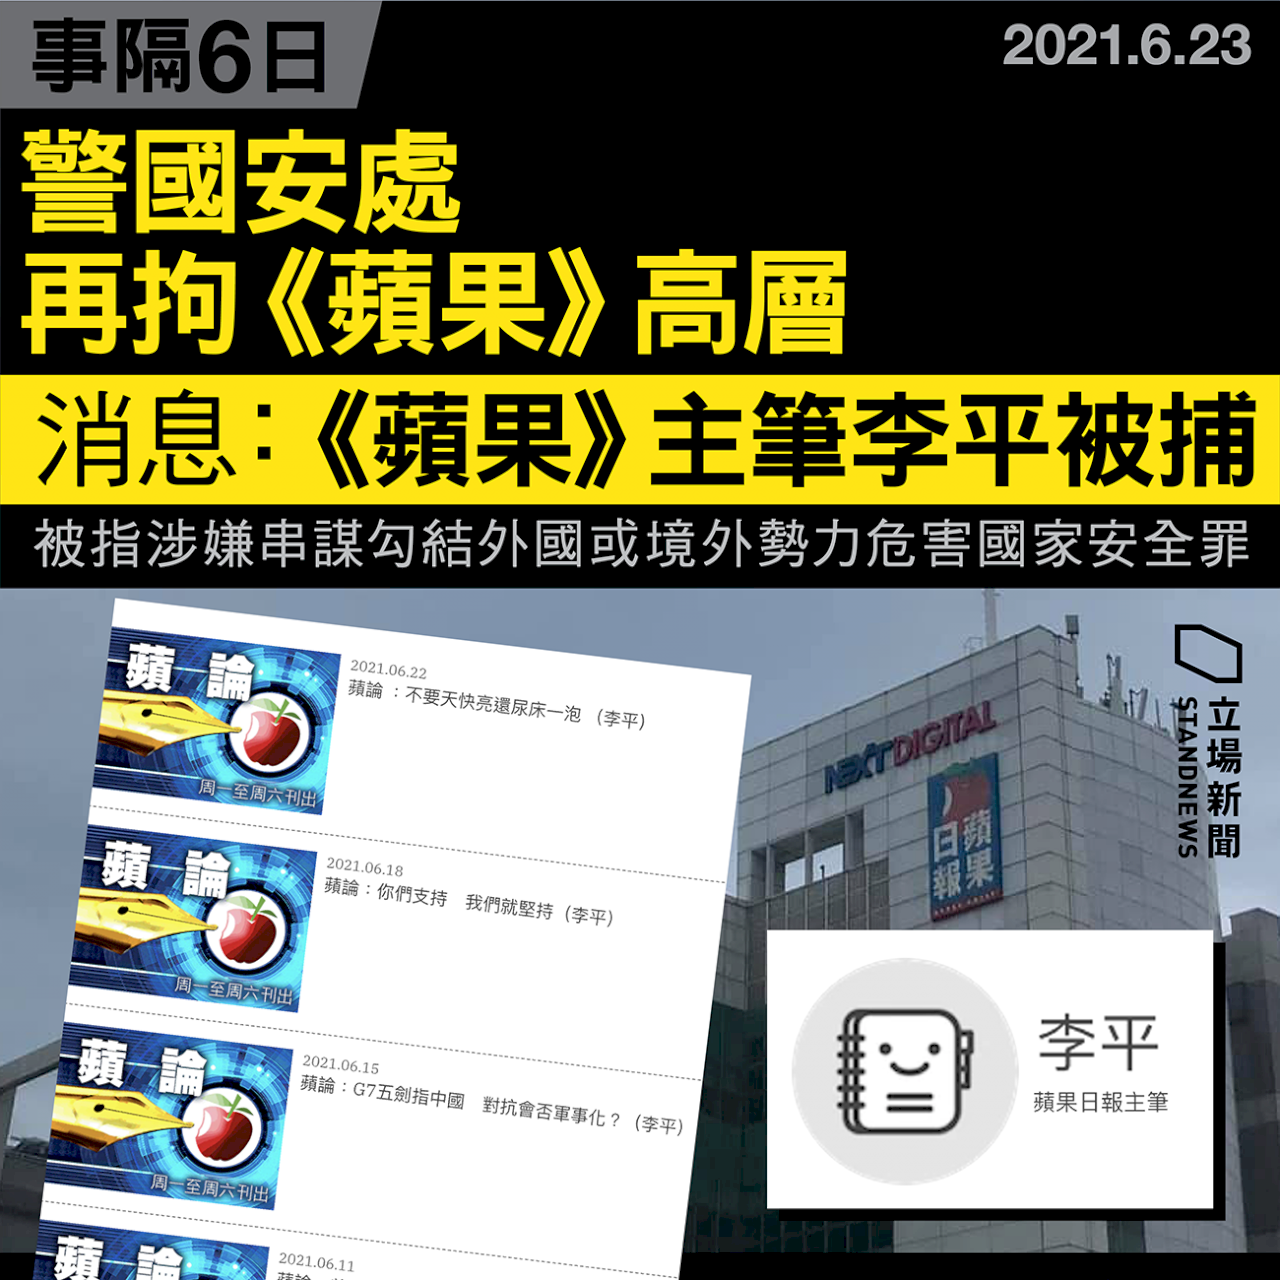 消息：香港《蘋果》主筆李平被捕